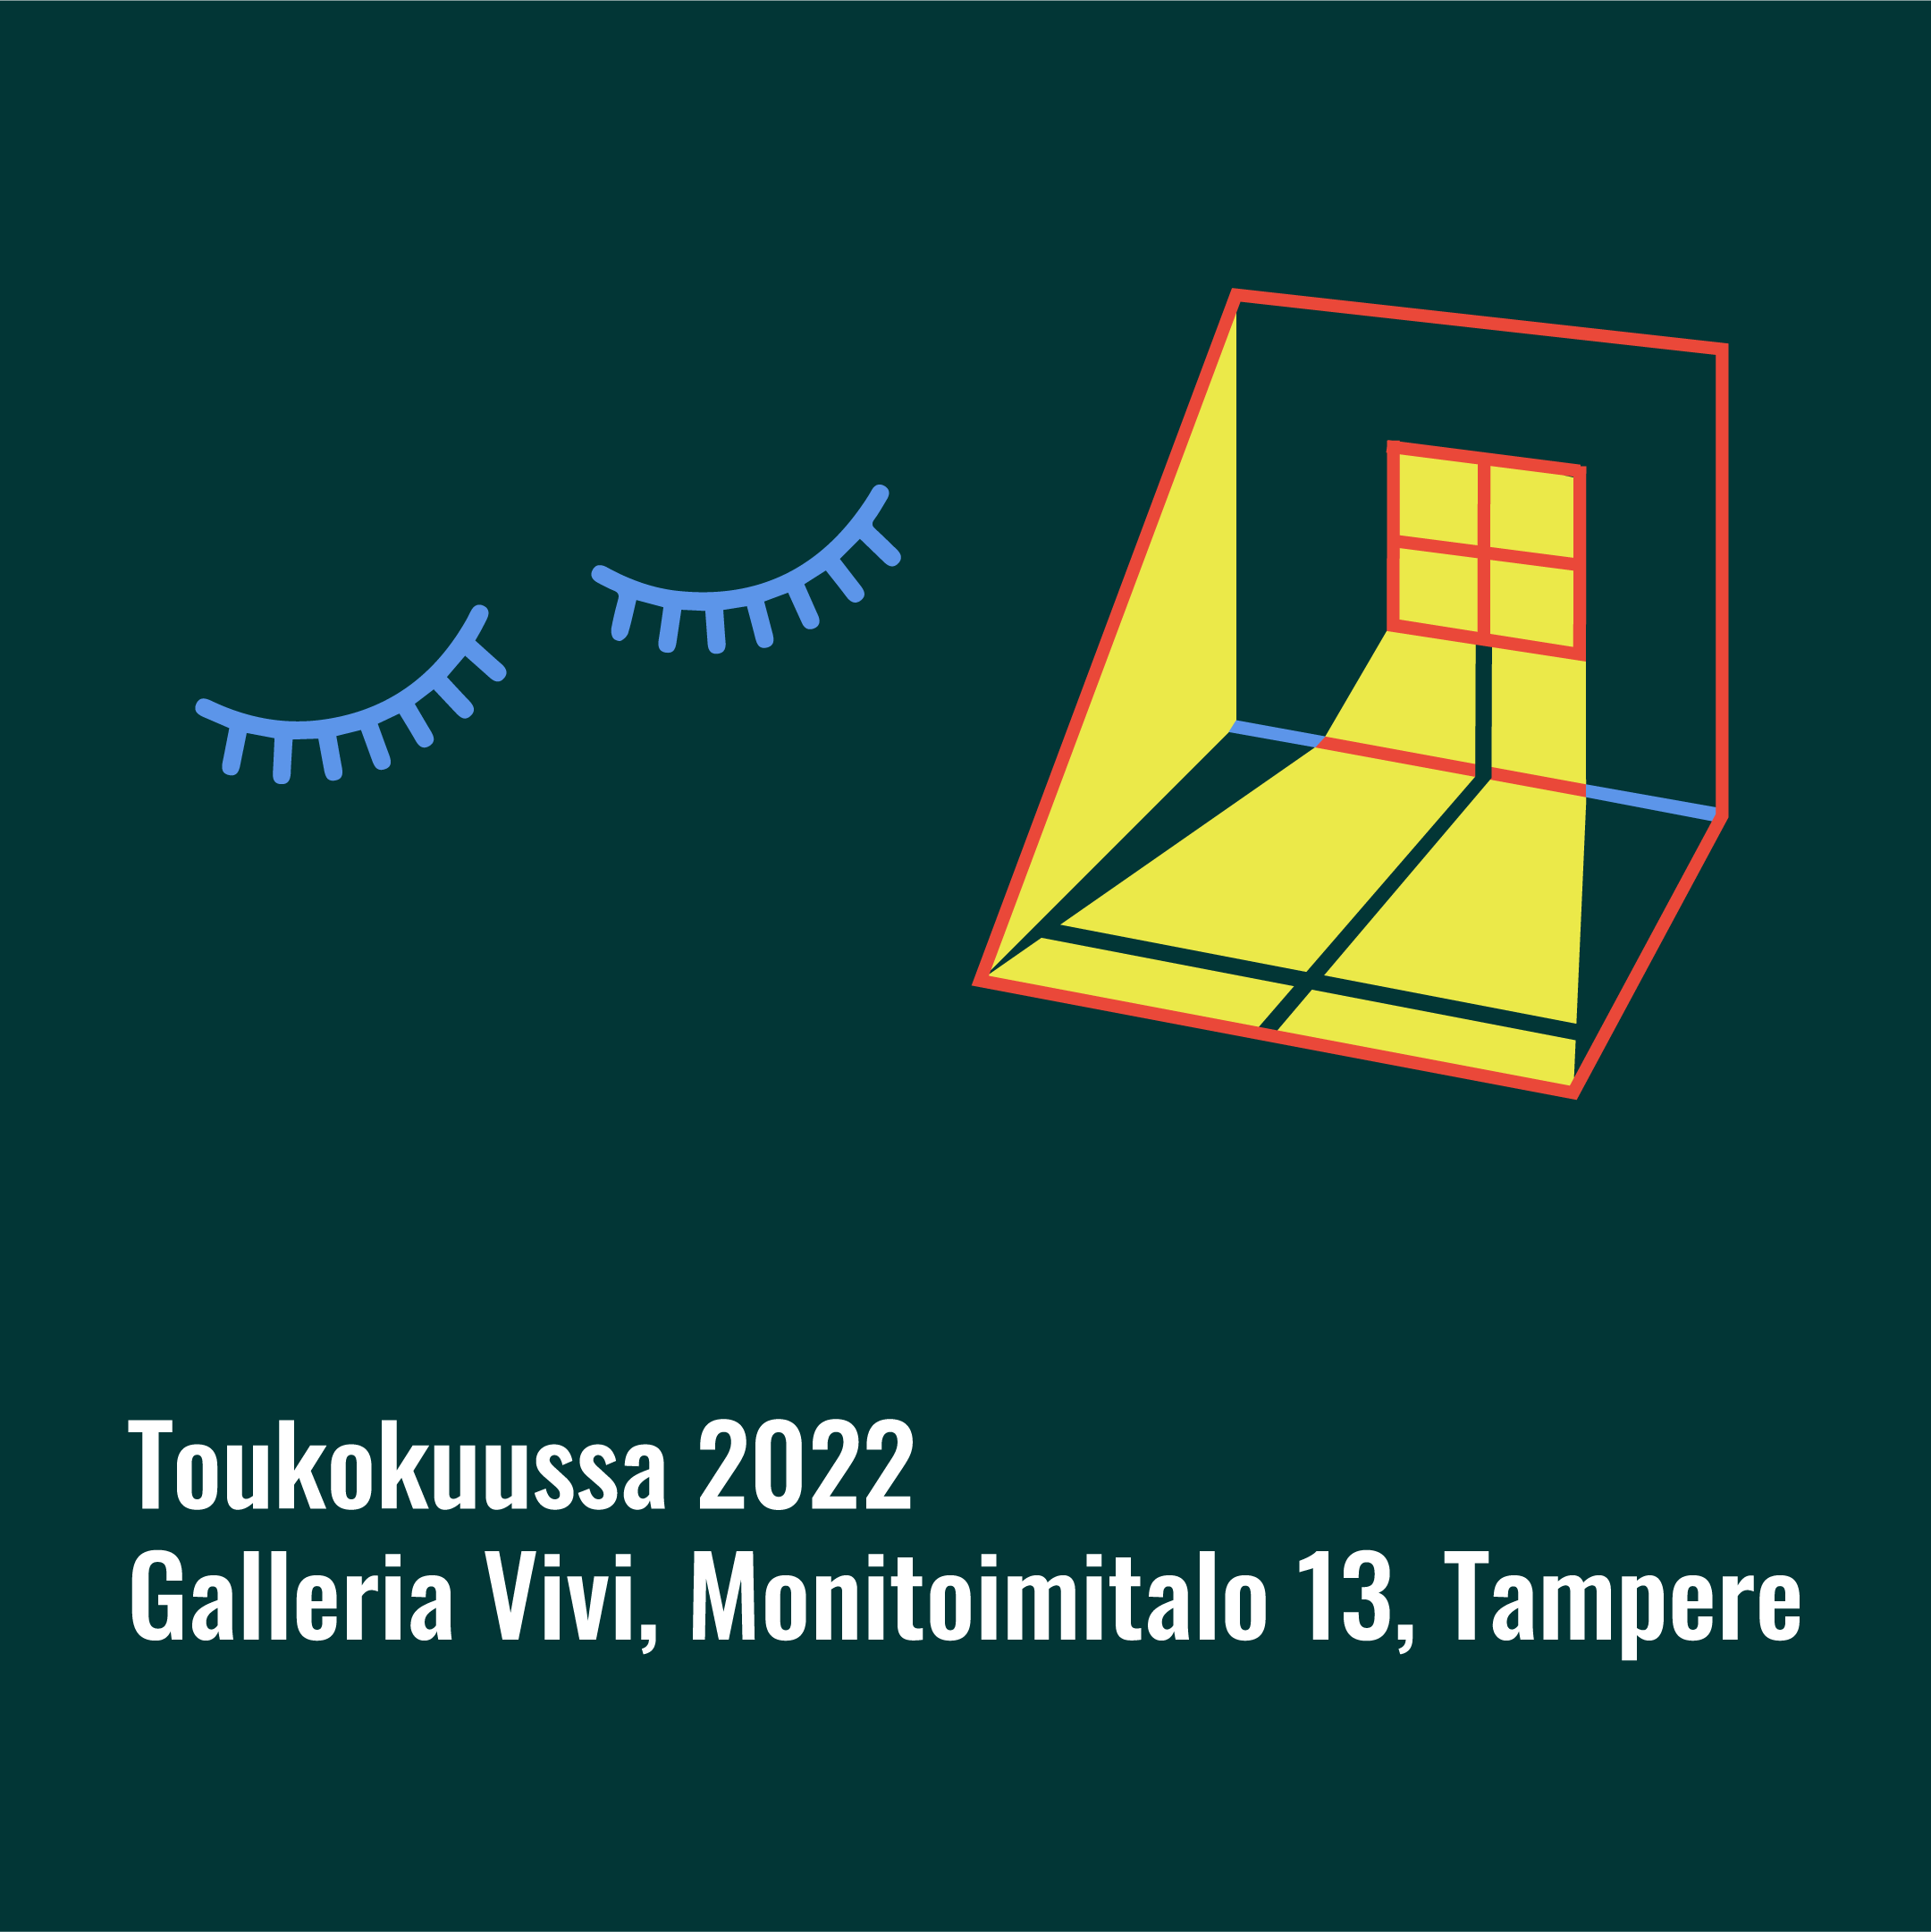 Teksti: Toukokuussa 2022, Galleria Vivi, Monitoimitalo 13, Tampere. Kuvassa suljetut silmät ja tyhjä huone, johon kajastaa valoa ikkunasta